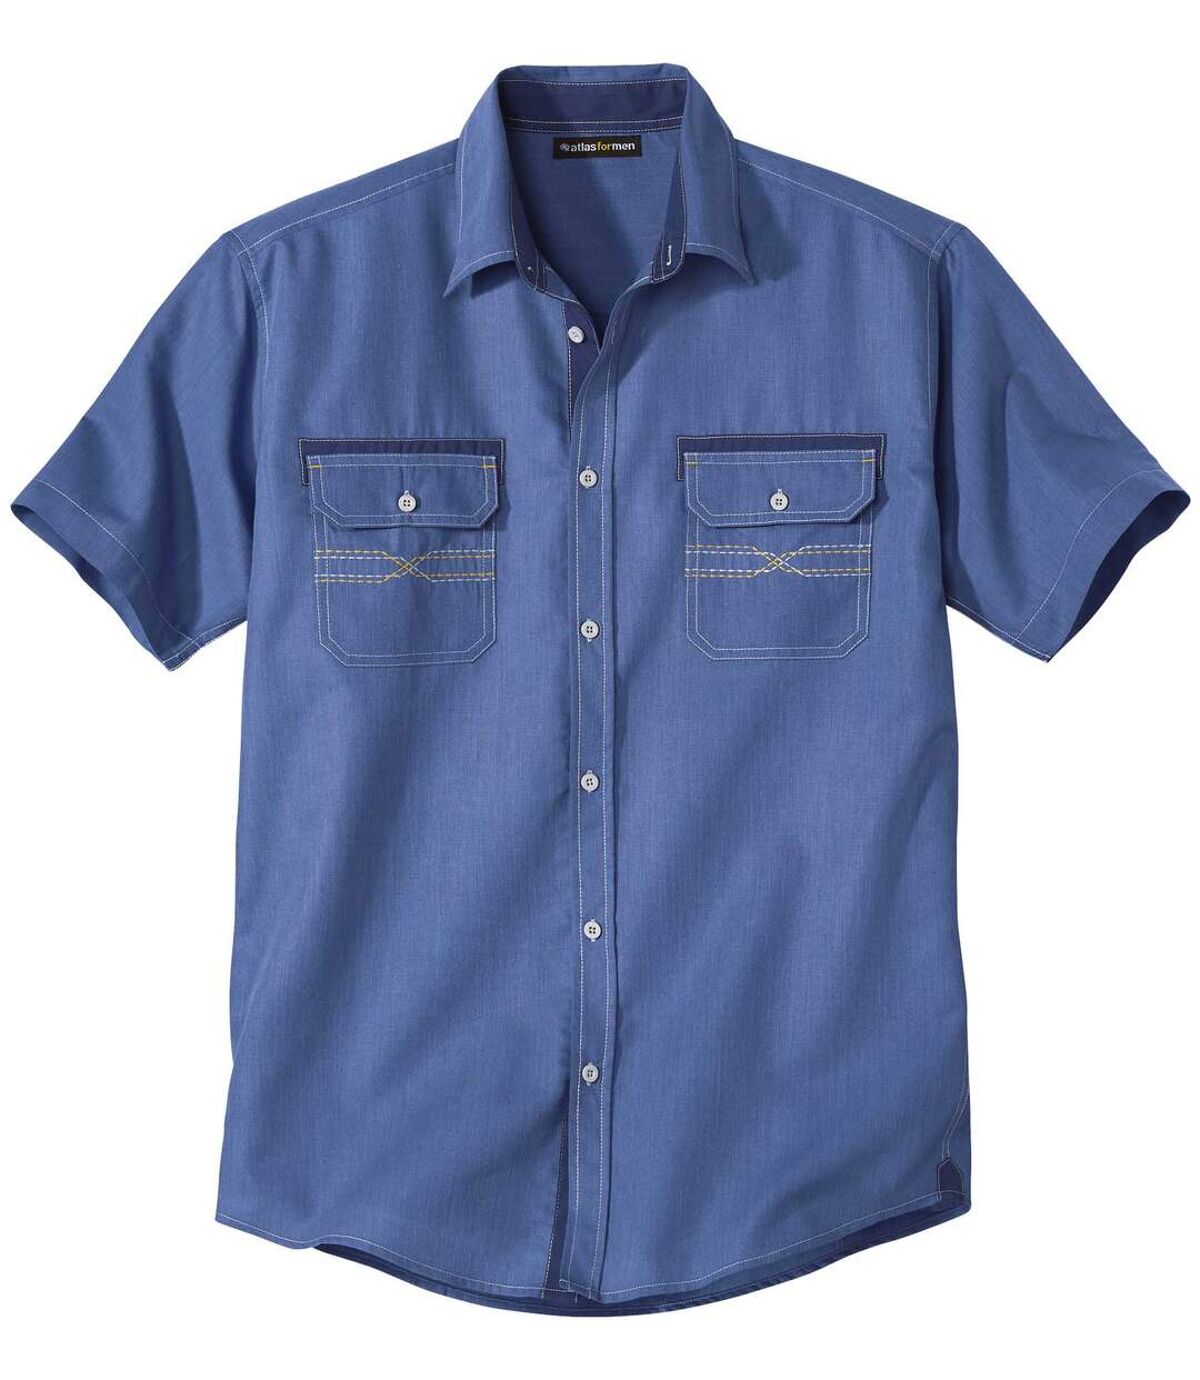 Men's Blue Patterned Shirt Atlas For Men